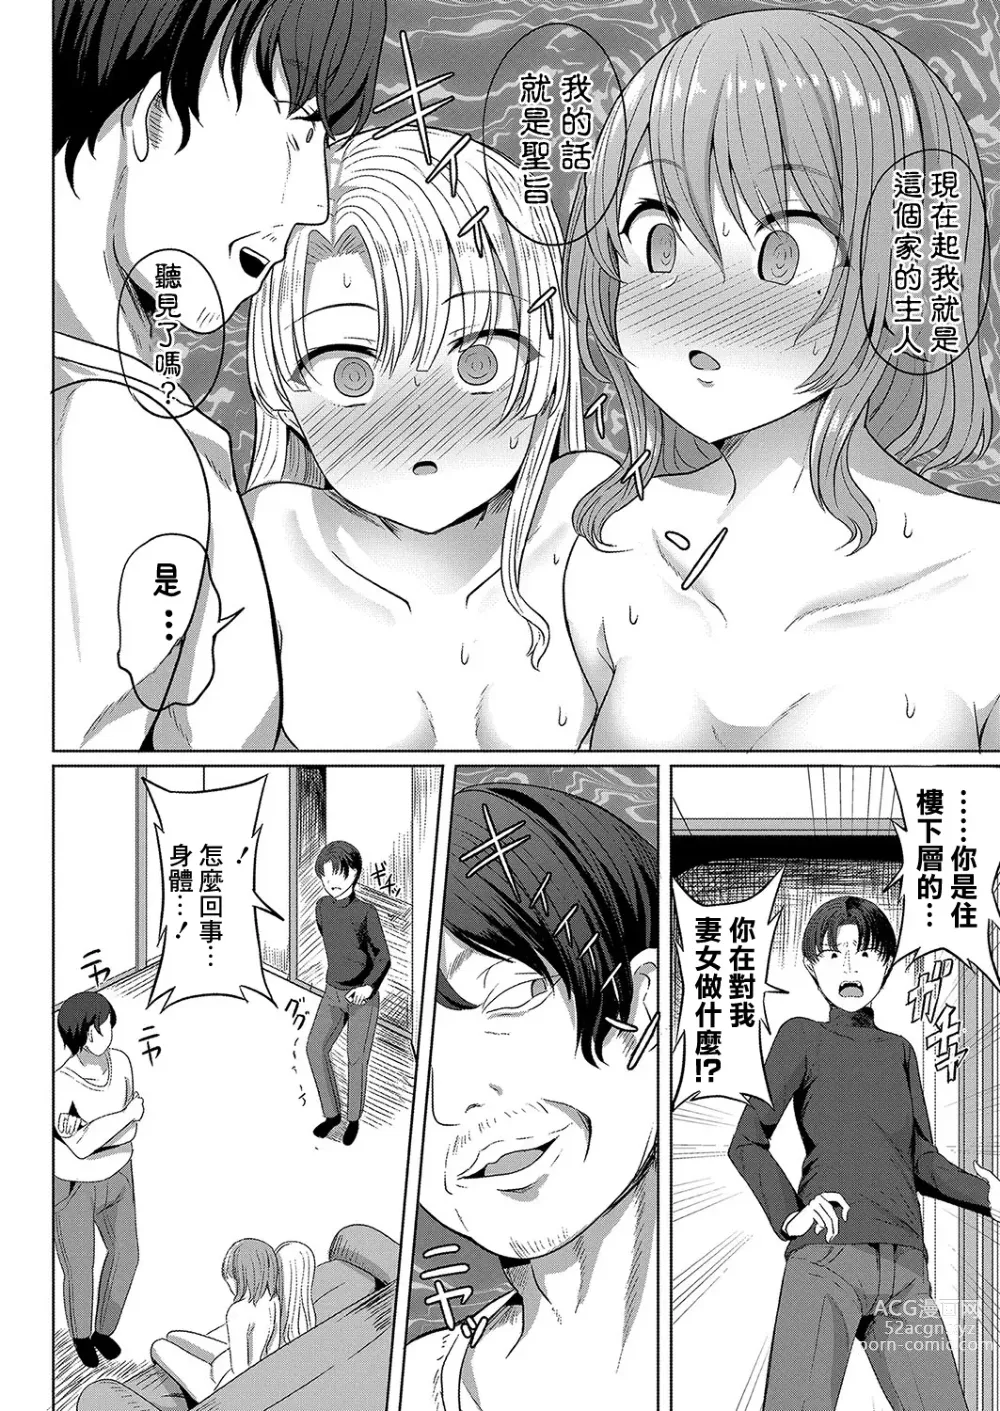 Page 8 of manga Saimin  Nottori Keikaku  Saishi Matomete  Oishiku Itadaichaimasu